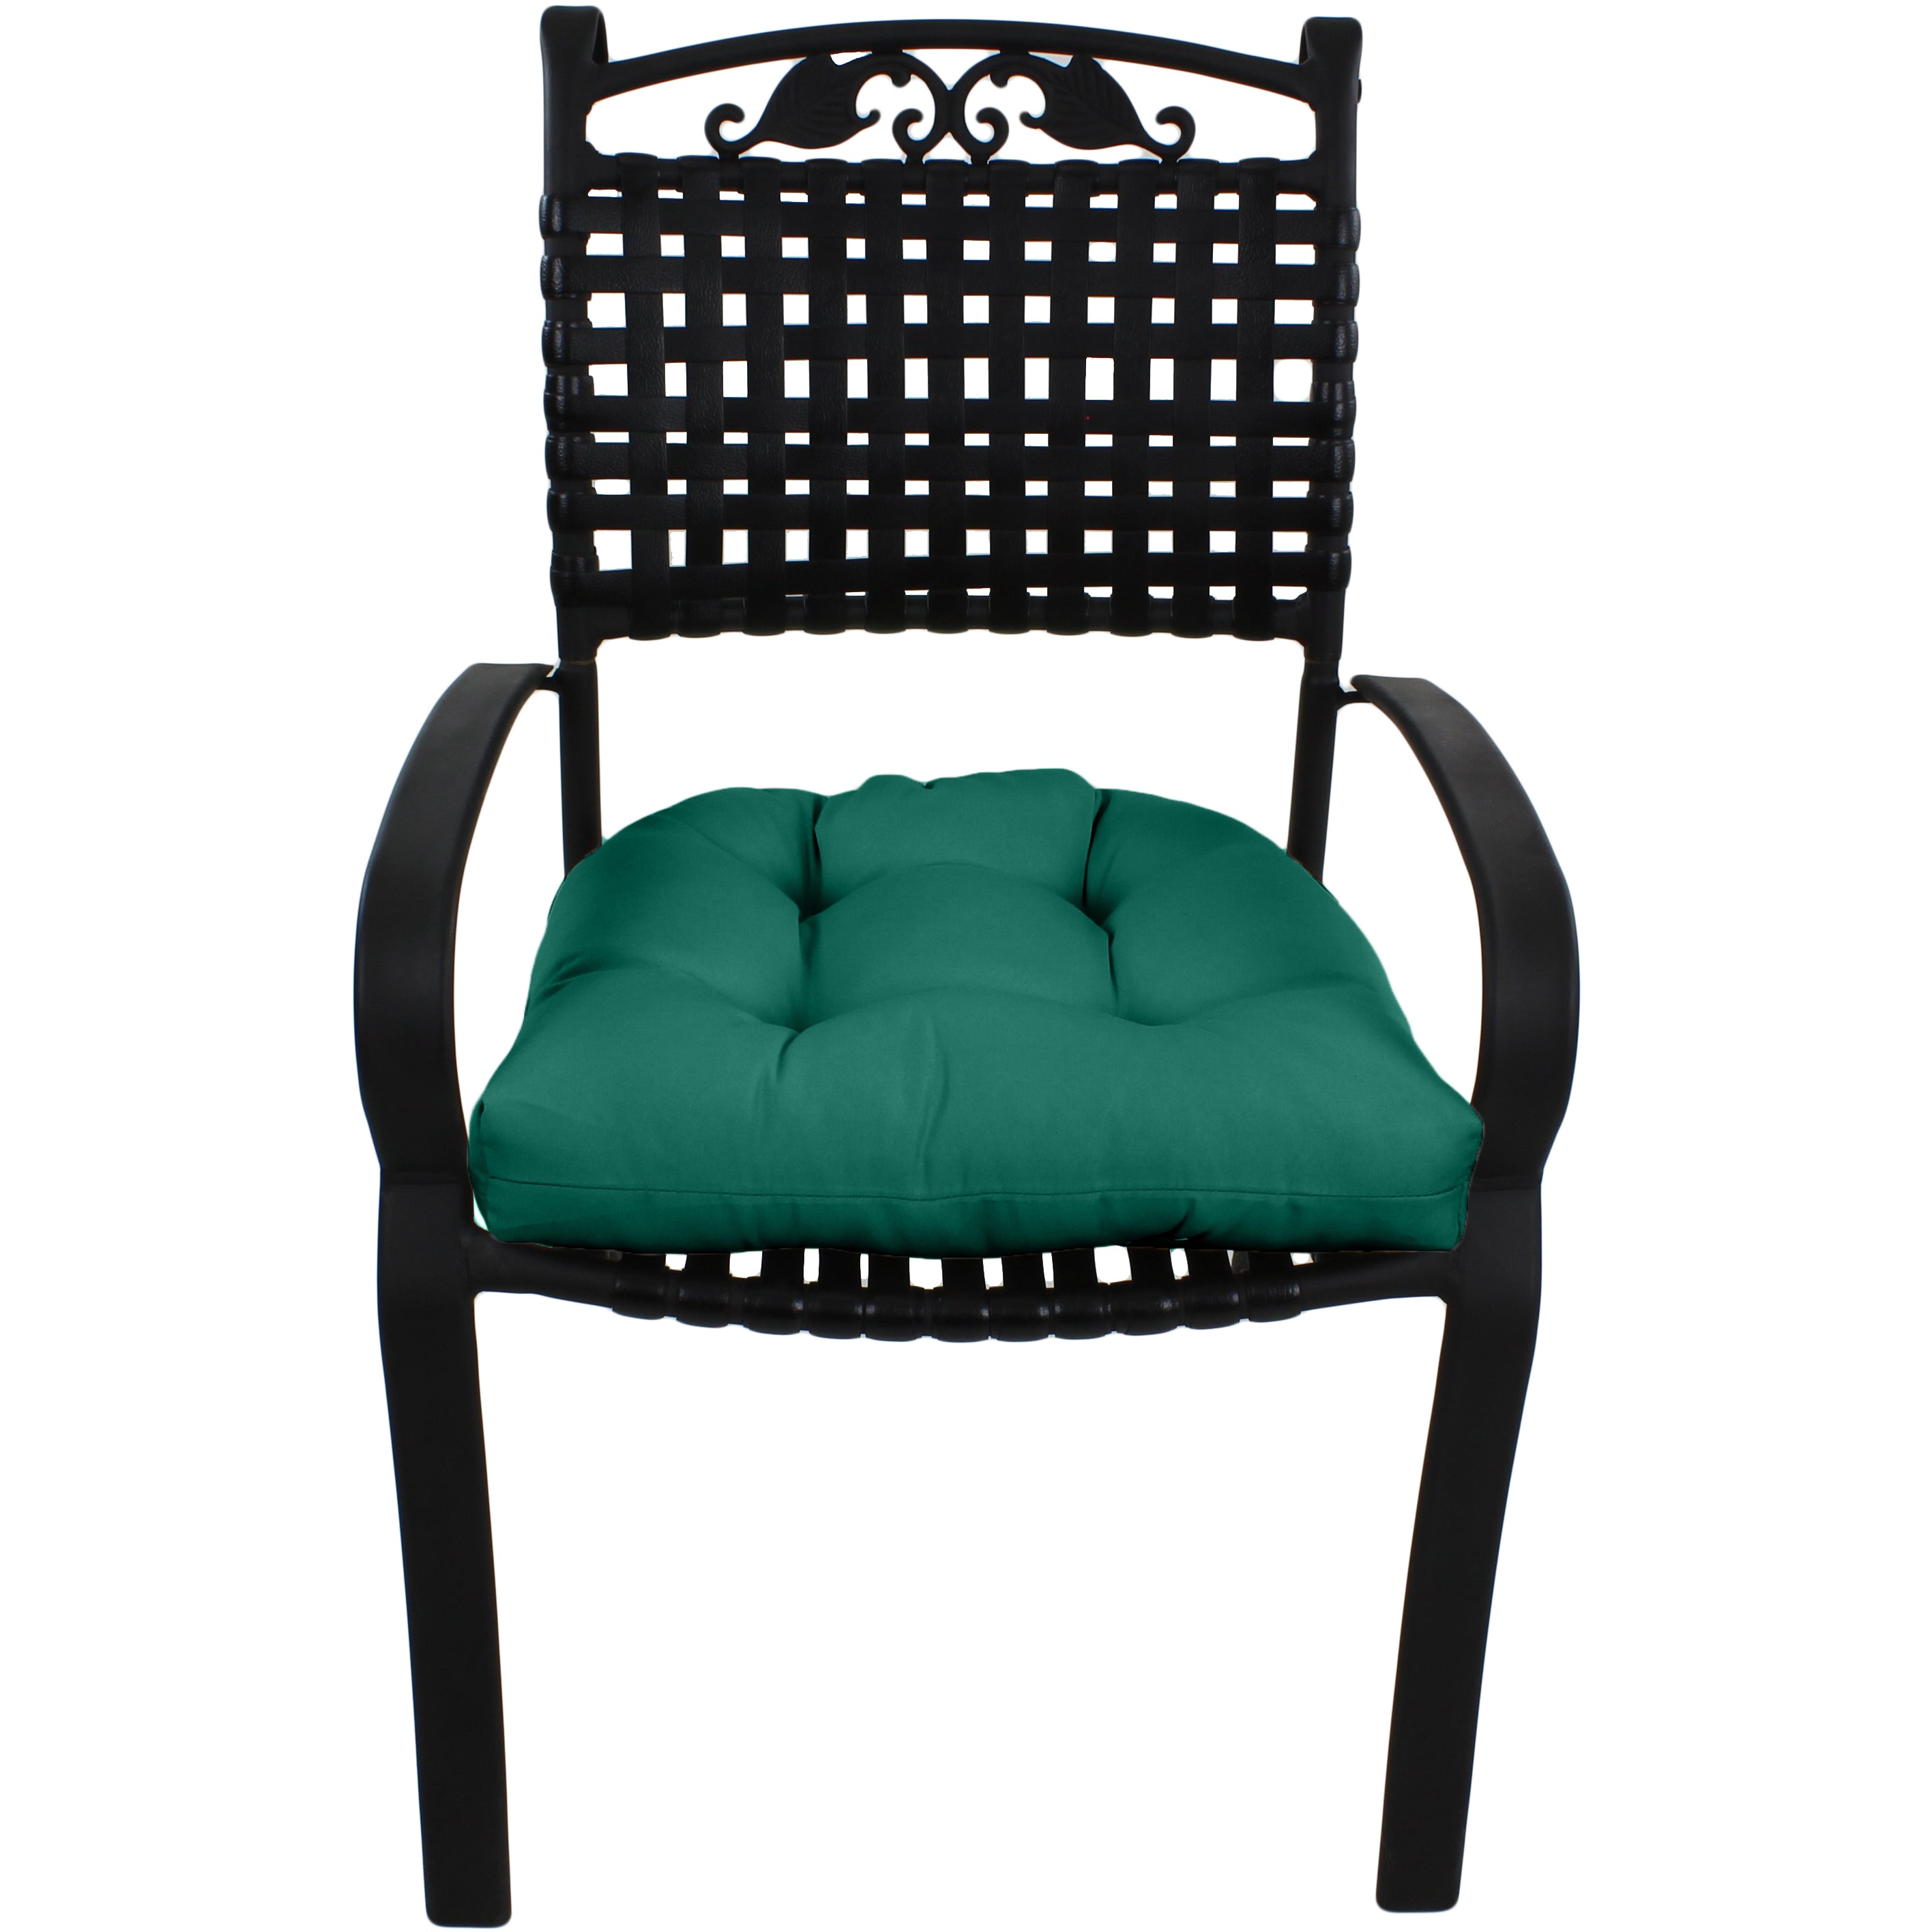 Teal Indoor / Outdoor Seat Cushion Patio D Cushion